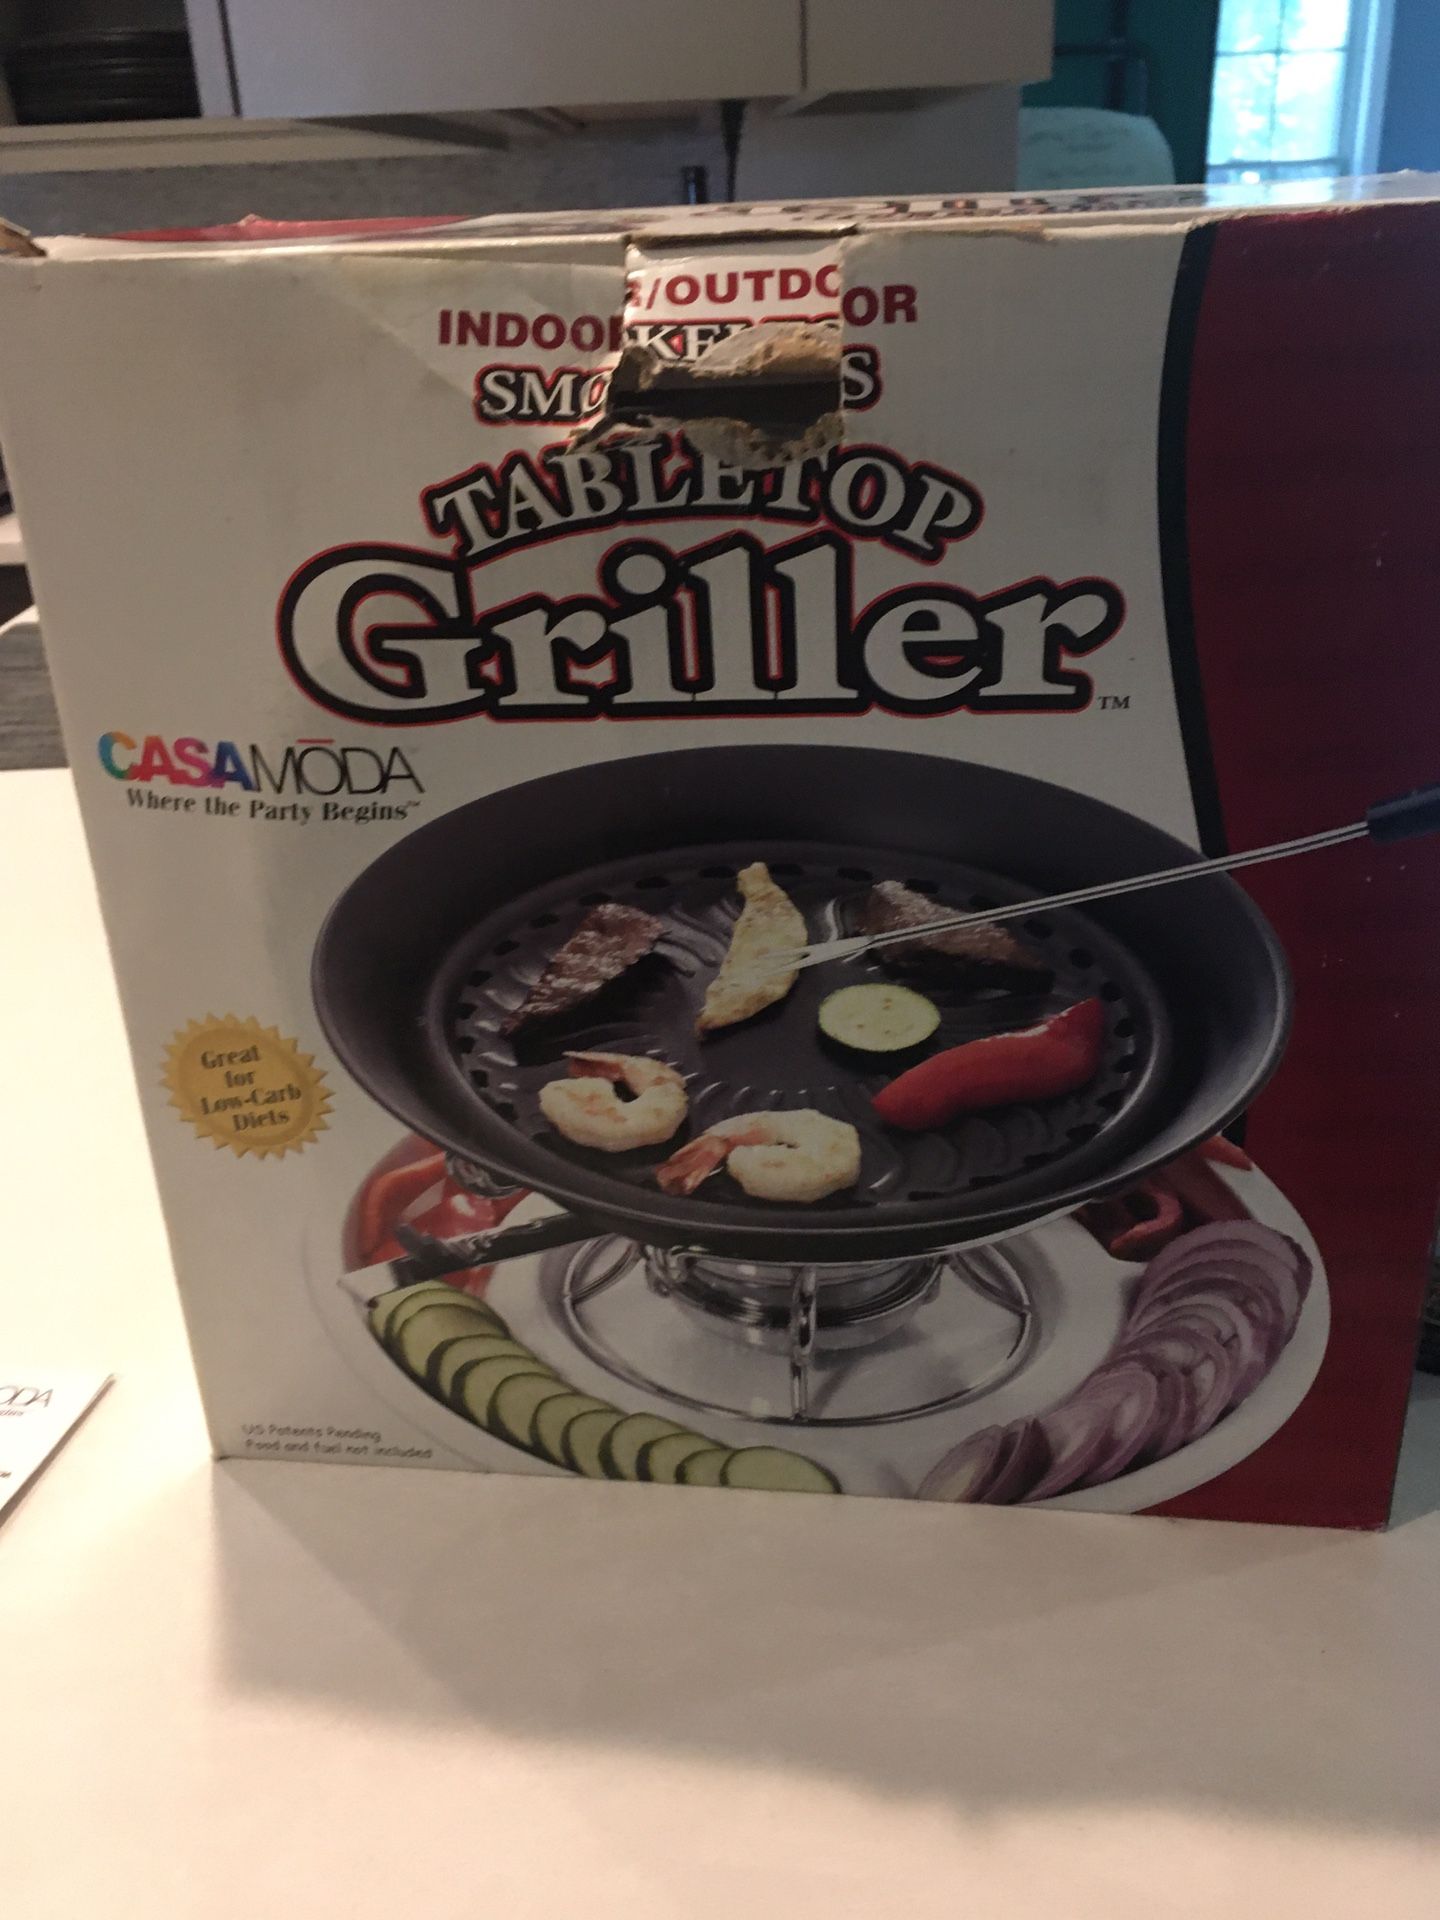 Tabletop Griller